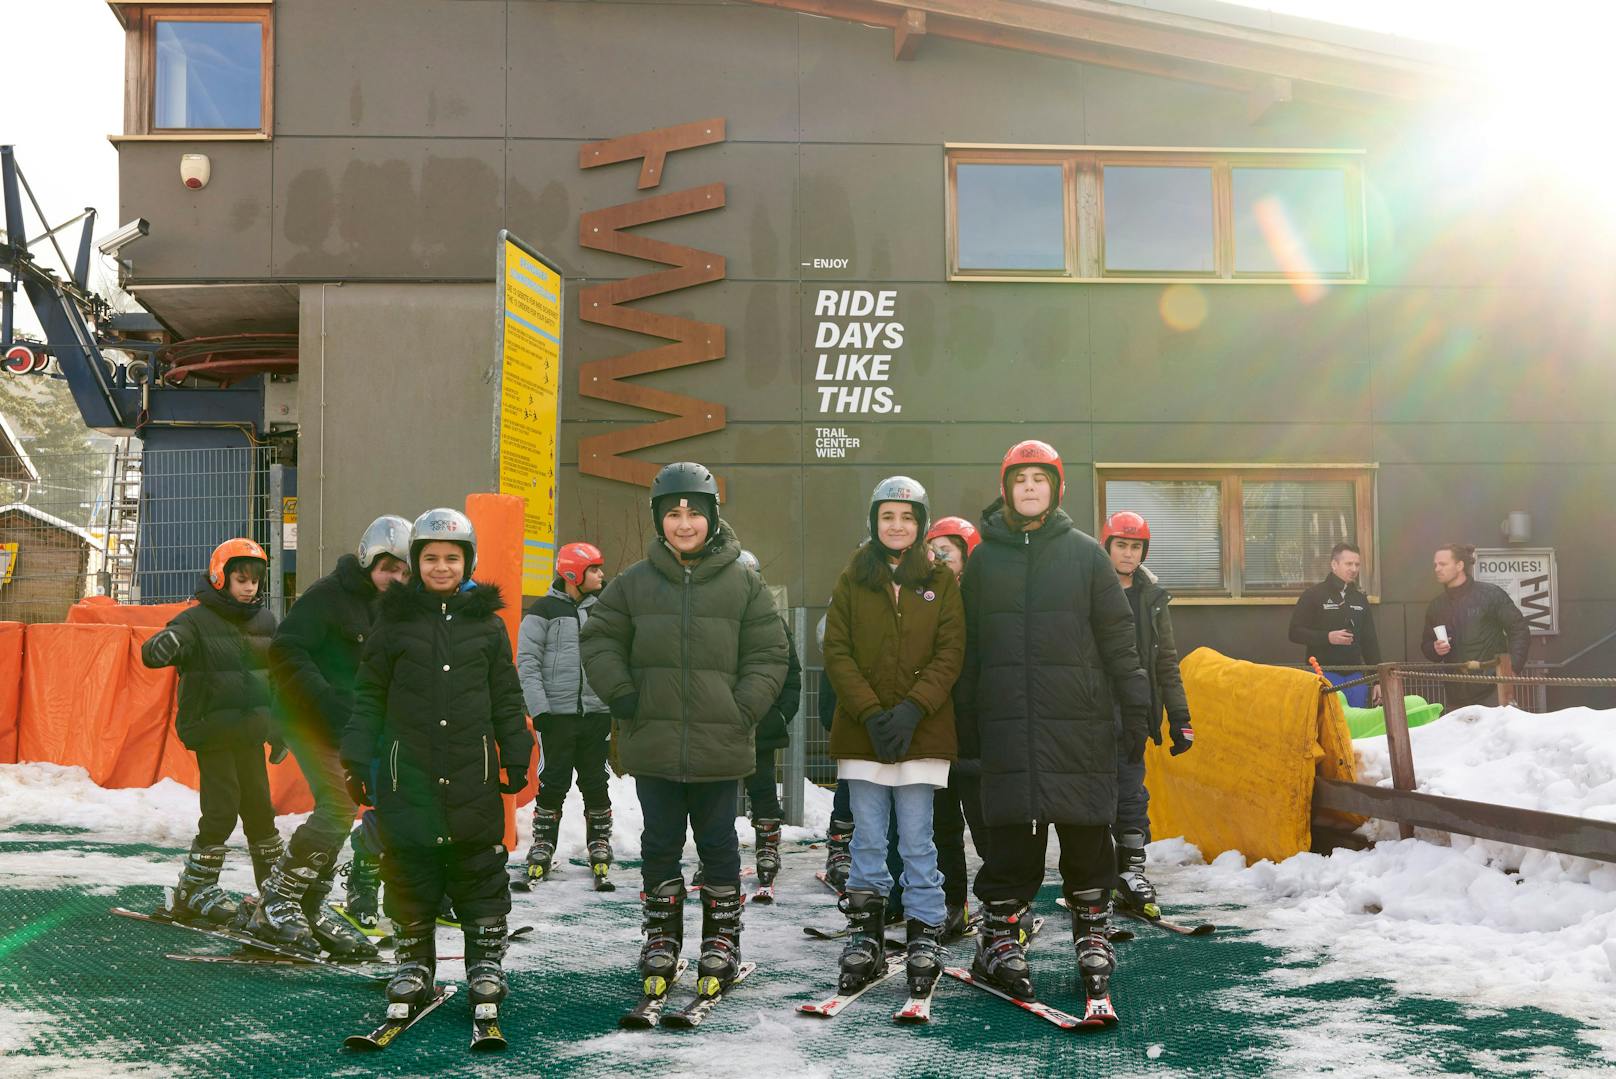 "Mit der Wiener Skiwiesn bringen wir viele Wiener Kinder auf die Ski, die sonst nicht die Möglichkeit dazu hätten", so Sportstadtrat Peter Hacker (SPÖ)